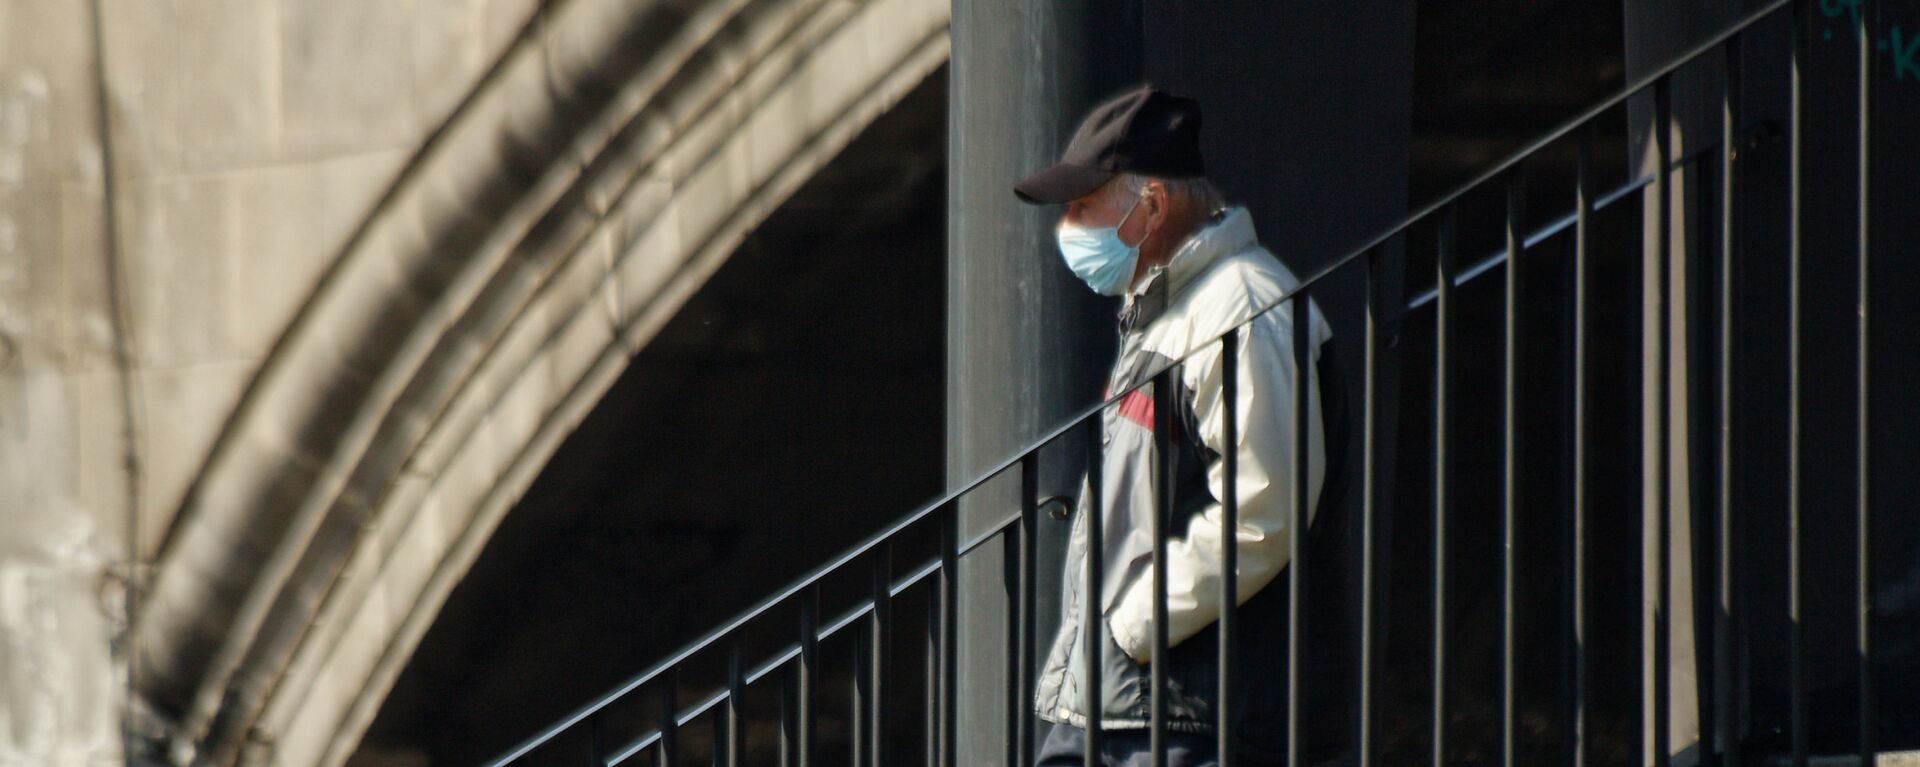 Эпидемия коронавируса - пожилой мужчина в маске идет по улице - Sputnik Грузия, 1920, 16.11.2021